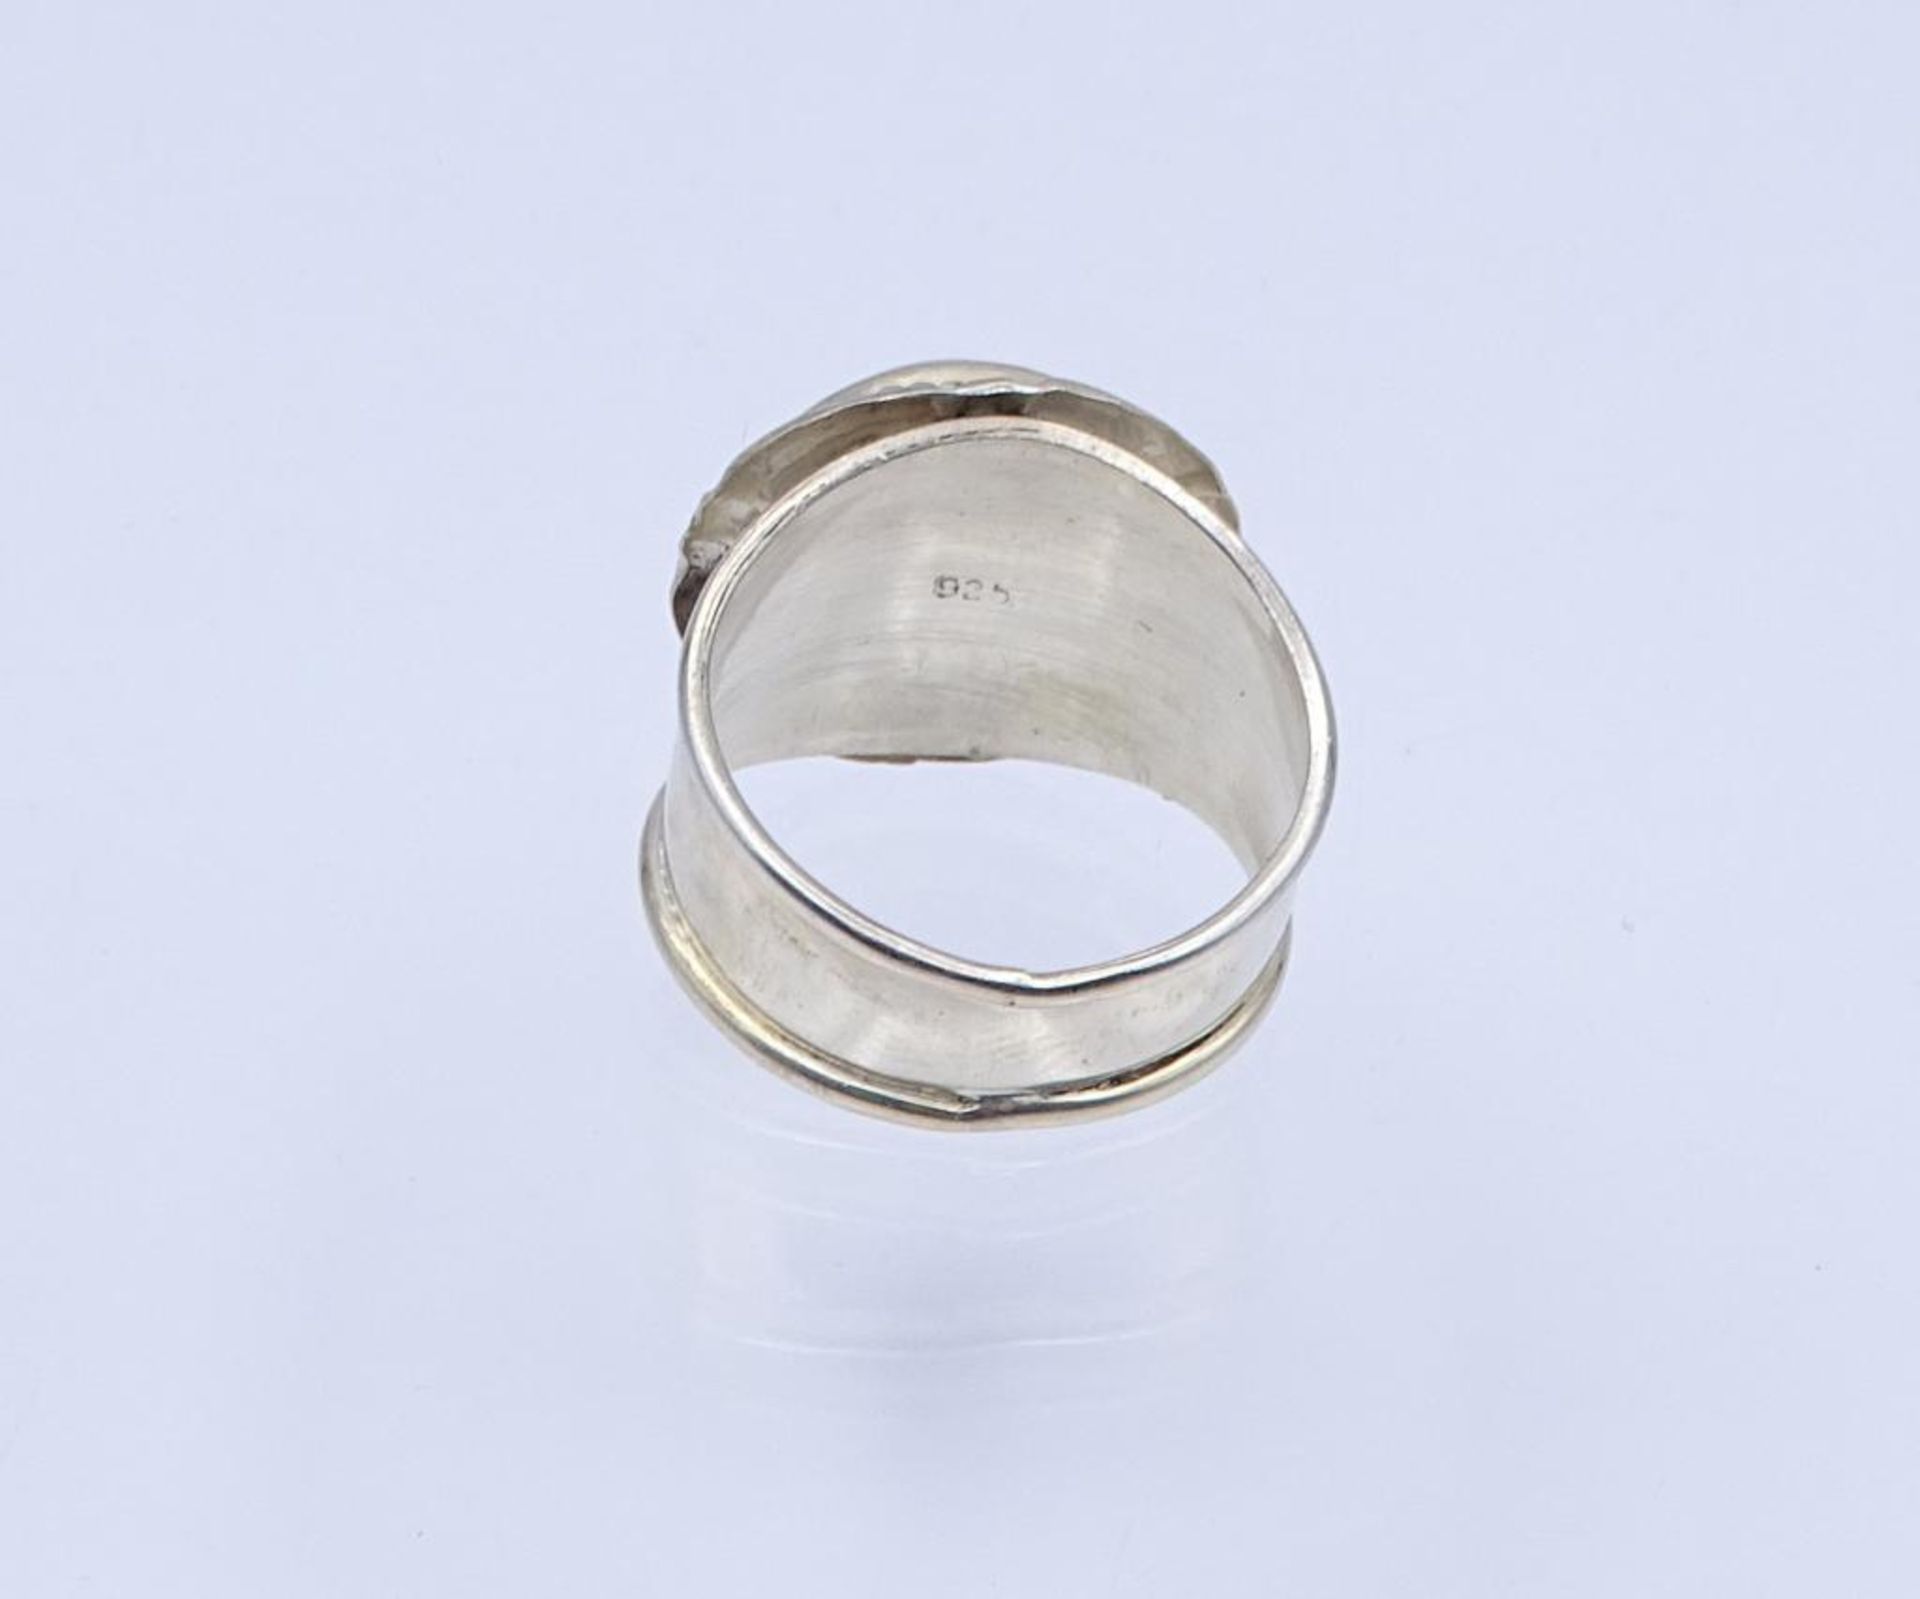 Farbstein-Silber-Ring,Silber 925/000, 4,4gr., RG 55- - -22.61 % buyer's premium on the hammer - Bild 3 aus 3